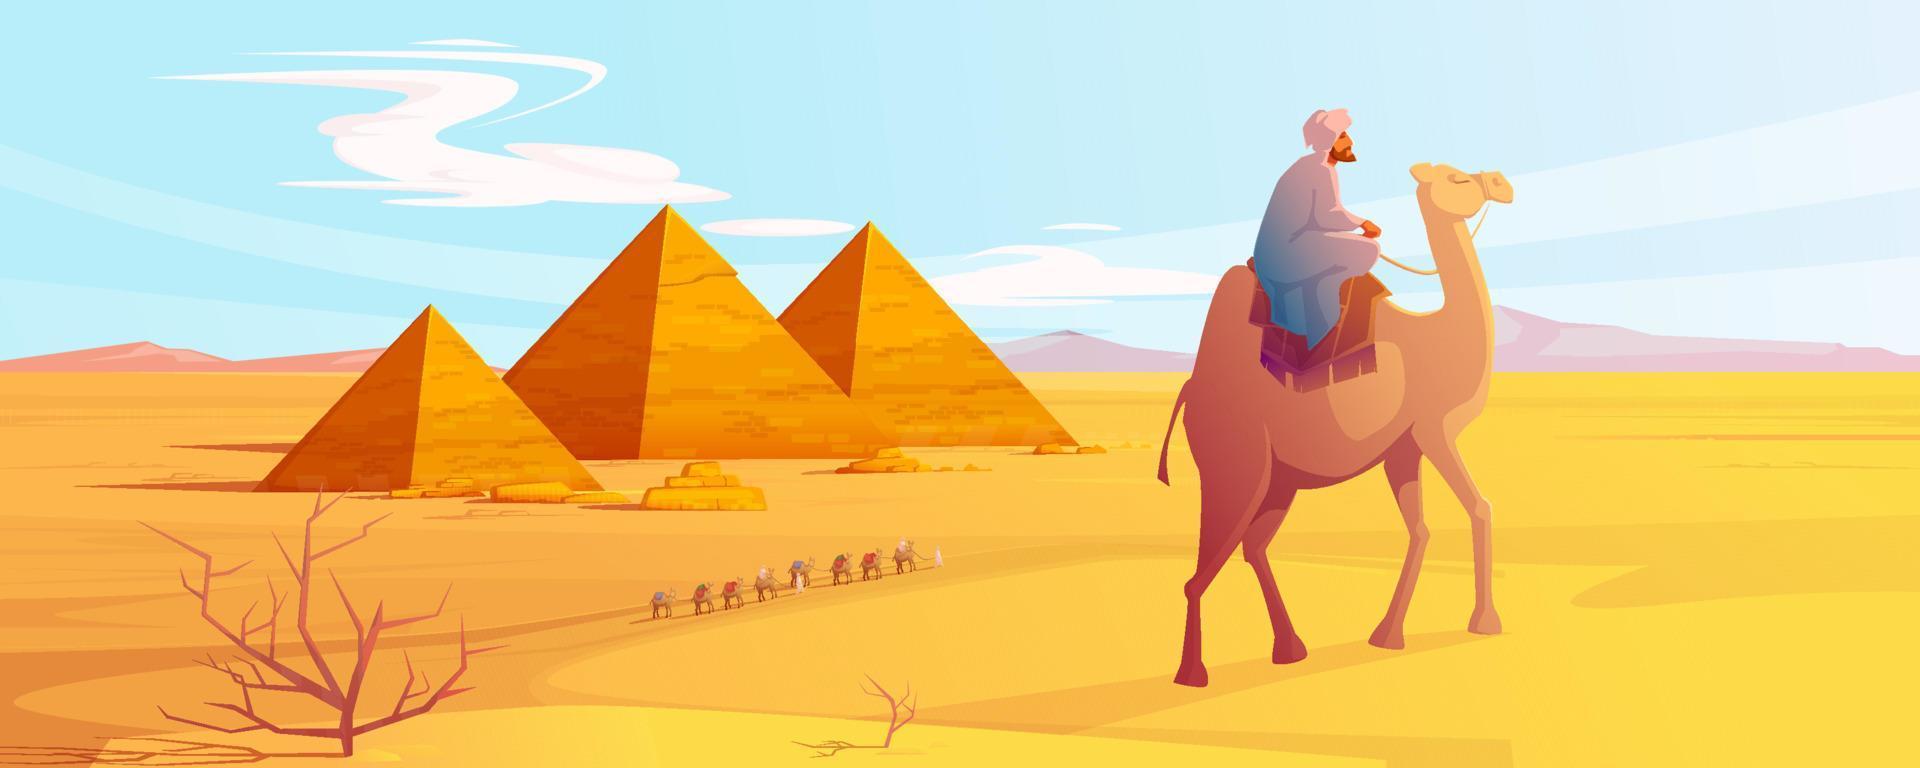 egypten öken- landskap med pyramider och kameler vektor